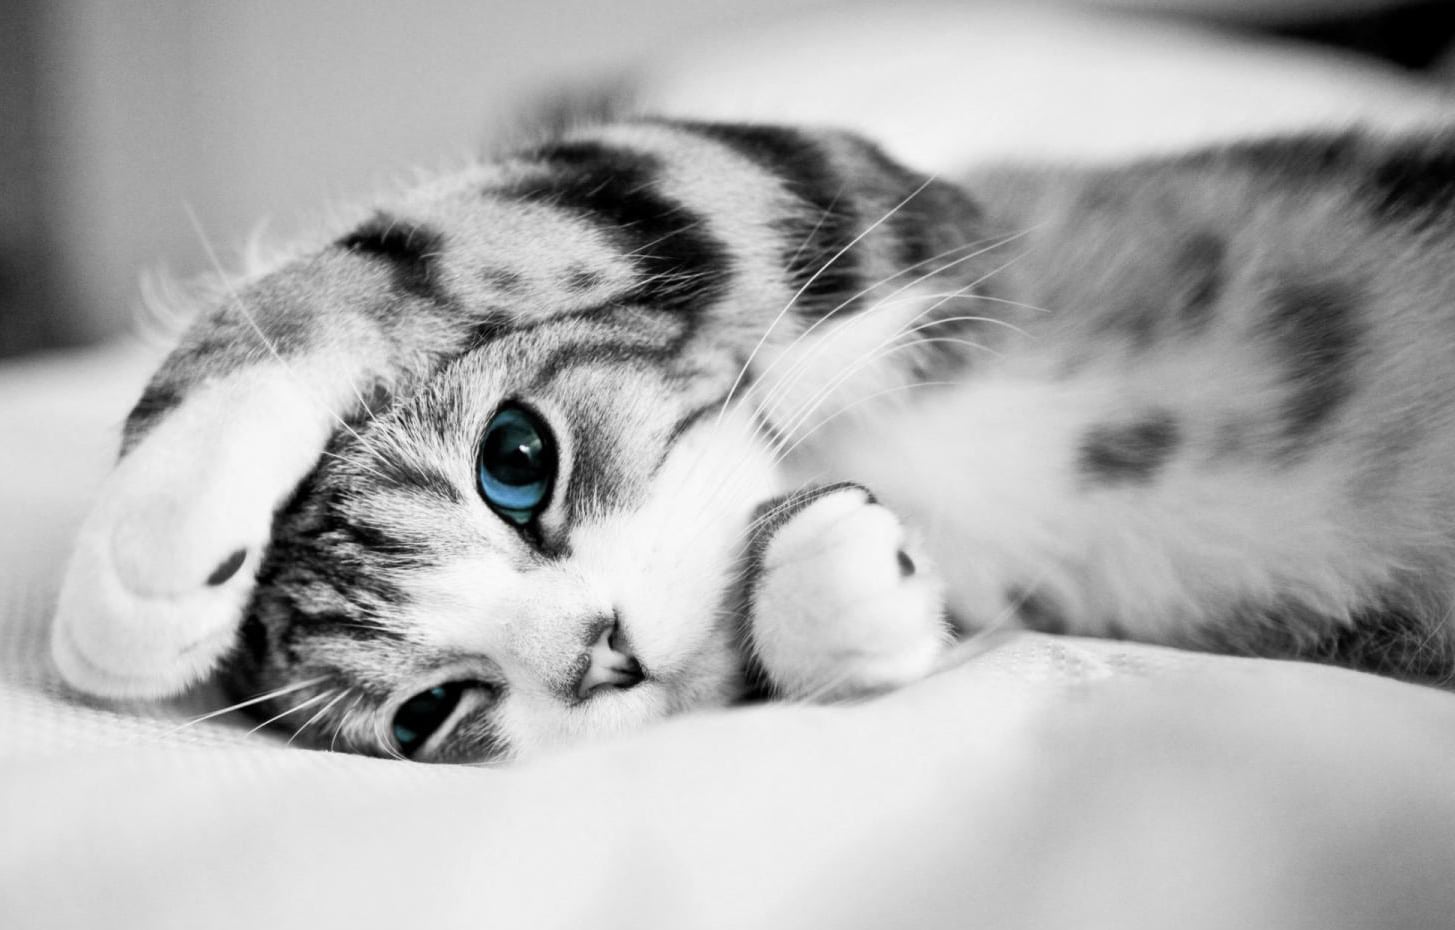 444 Hình Ảnh Mèo Cute, Đẹp, Đáng Yêu Làm Tim Liêu Xiêu